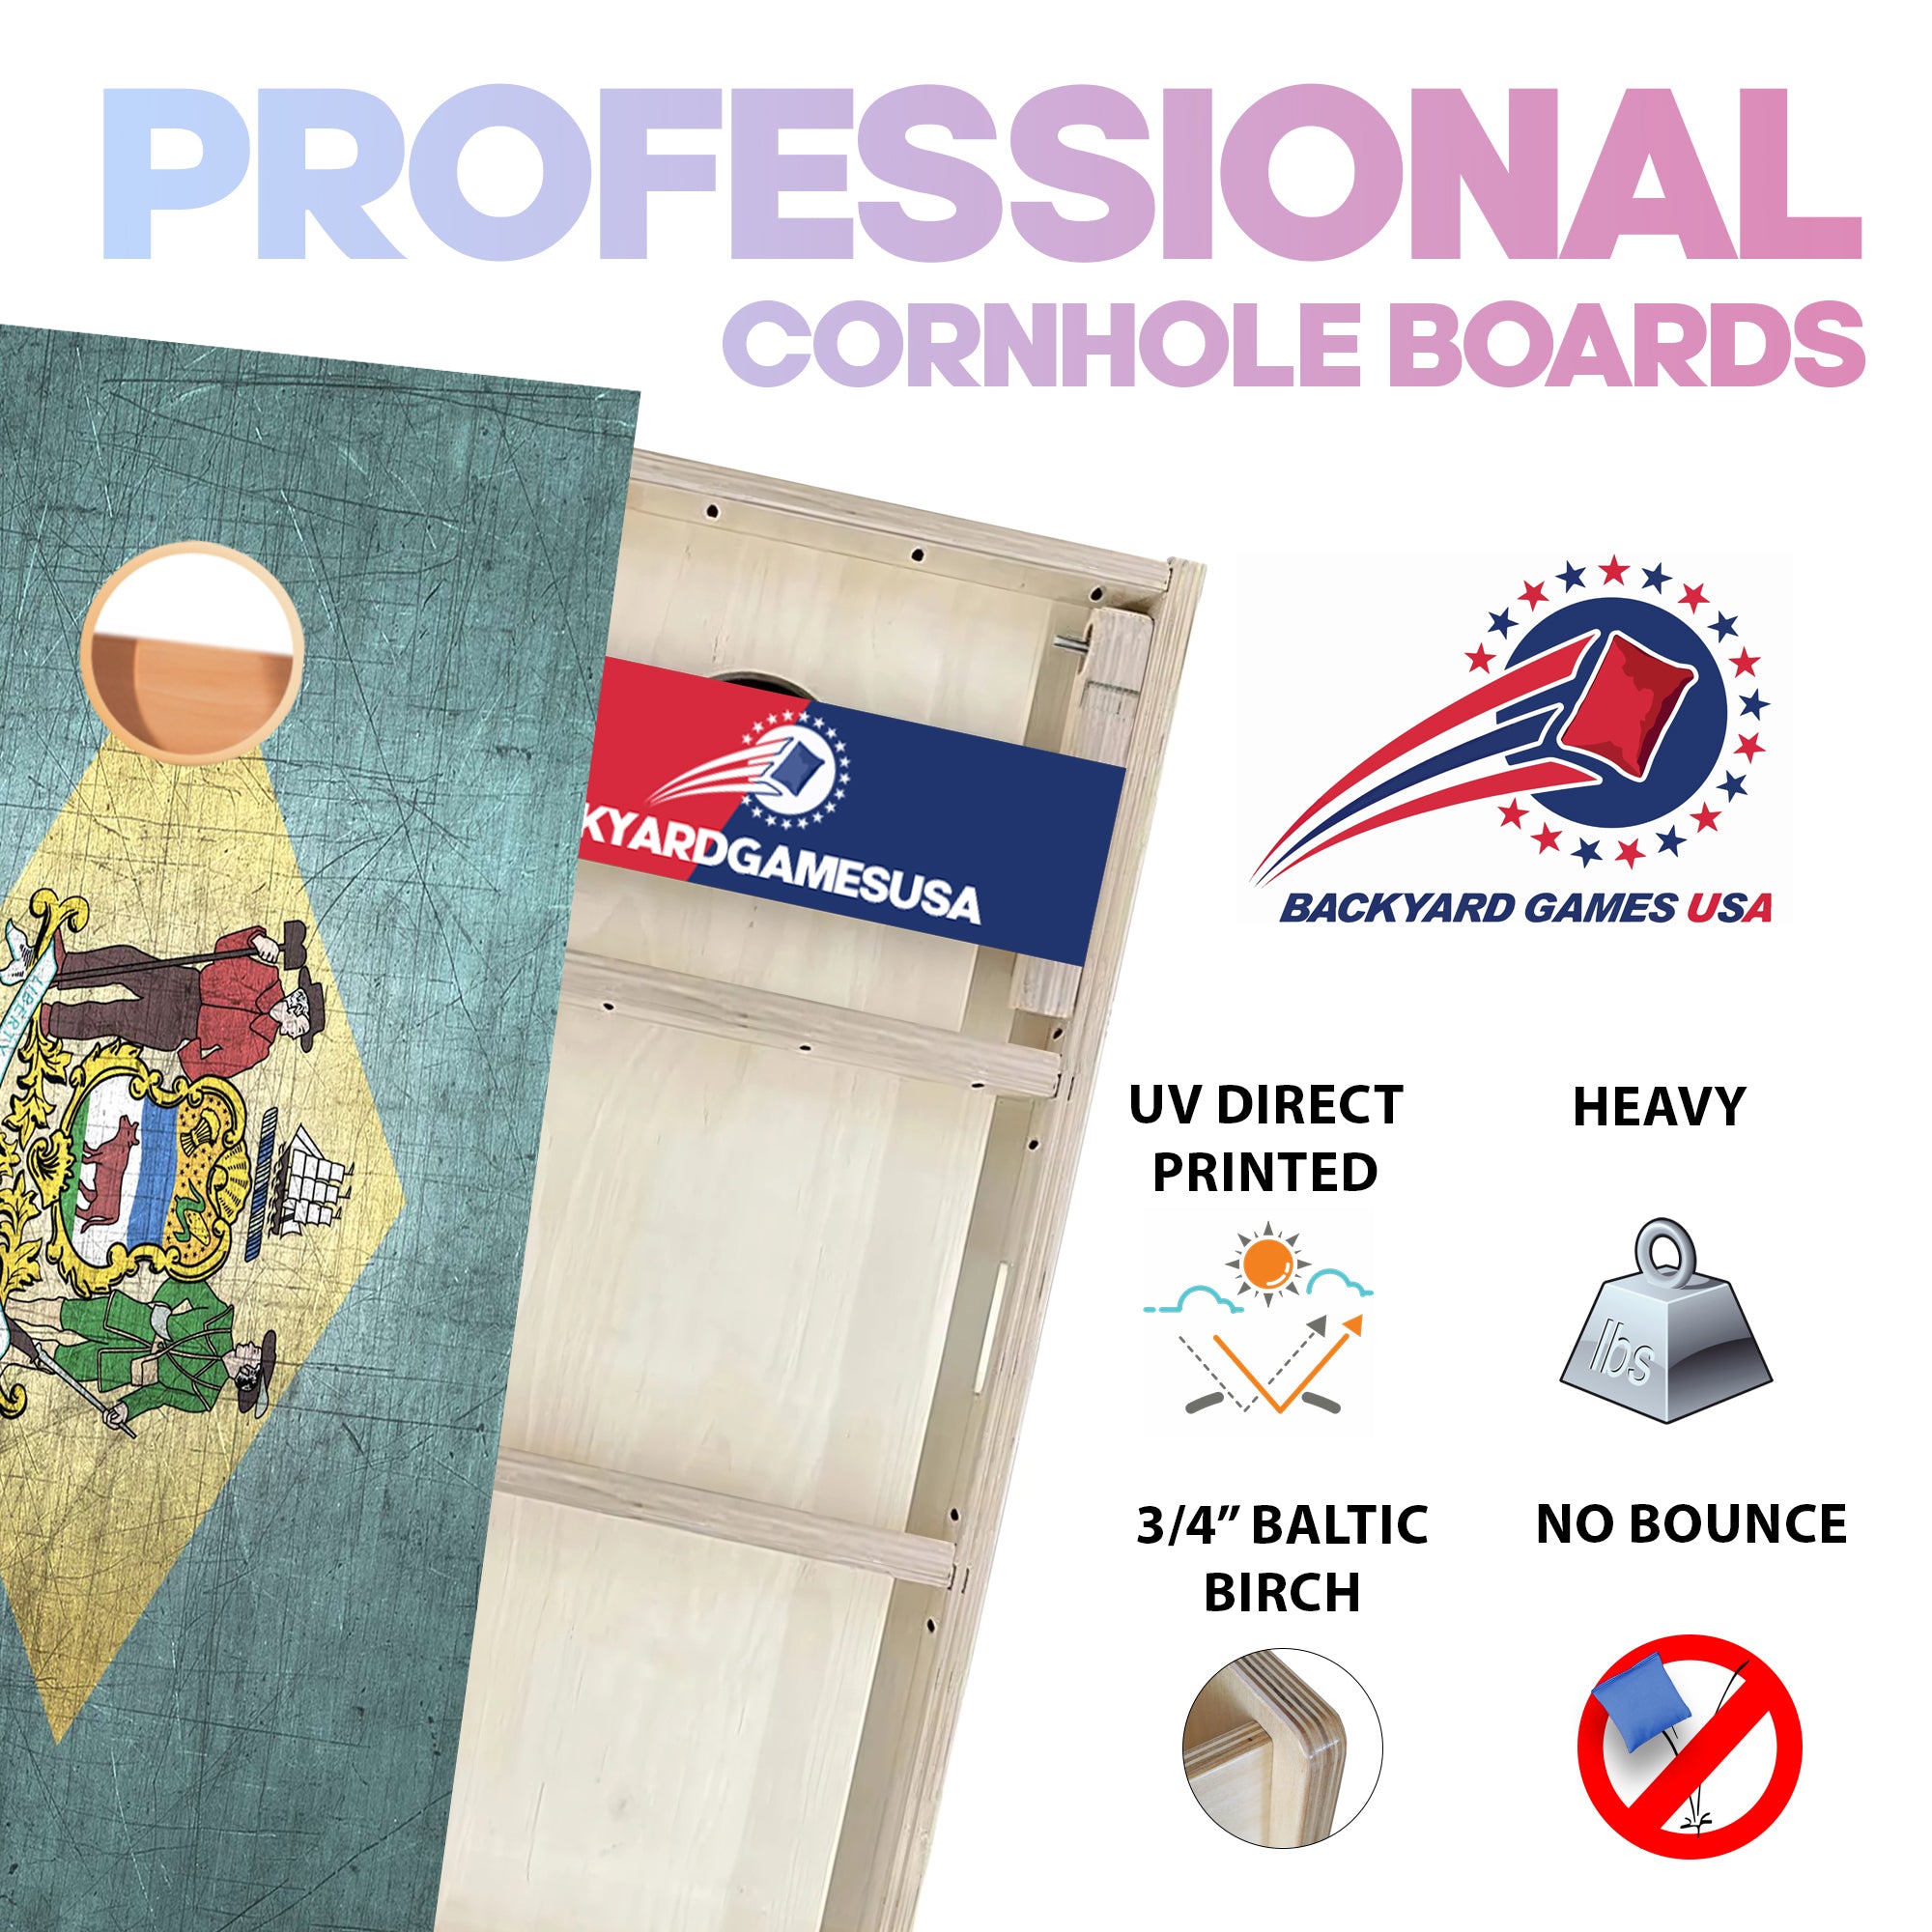 Delaware Professional Cornhole Boards